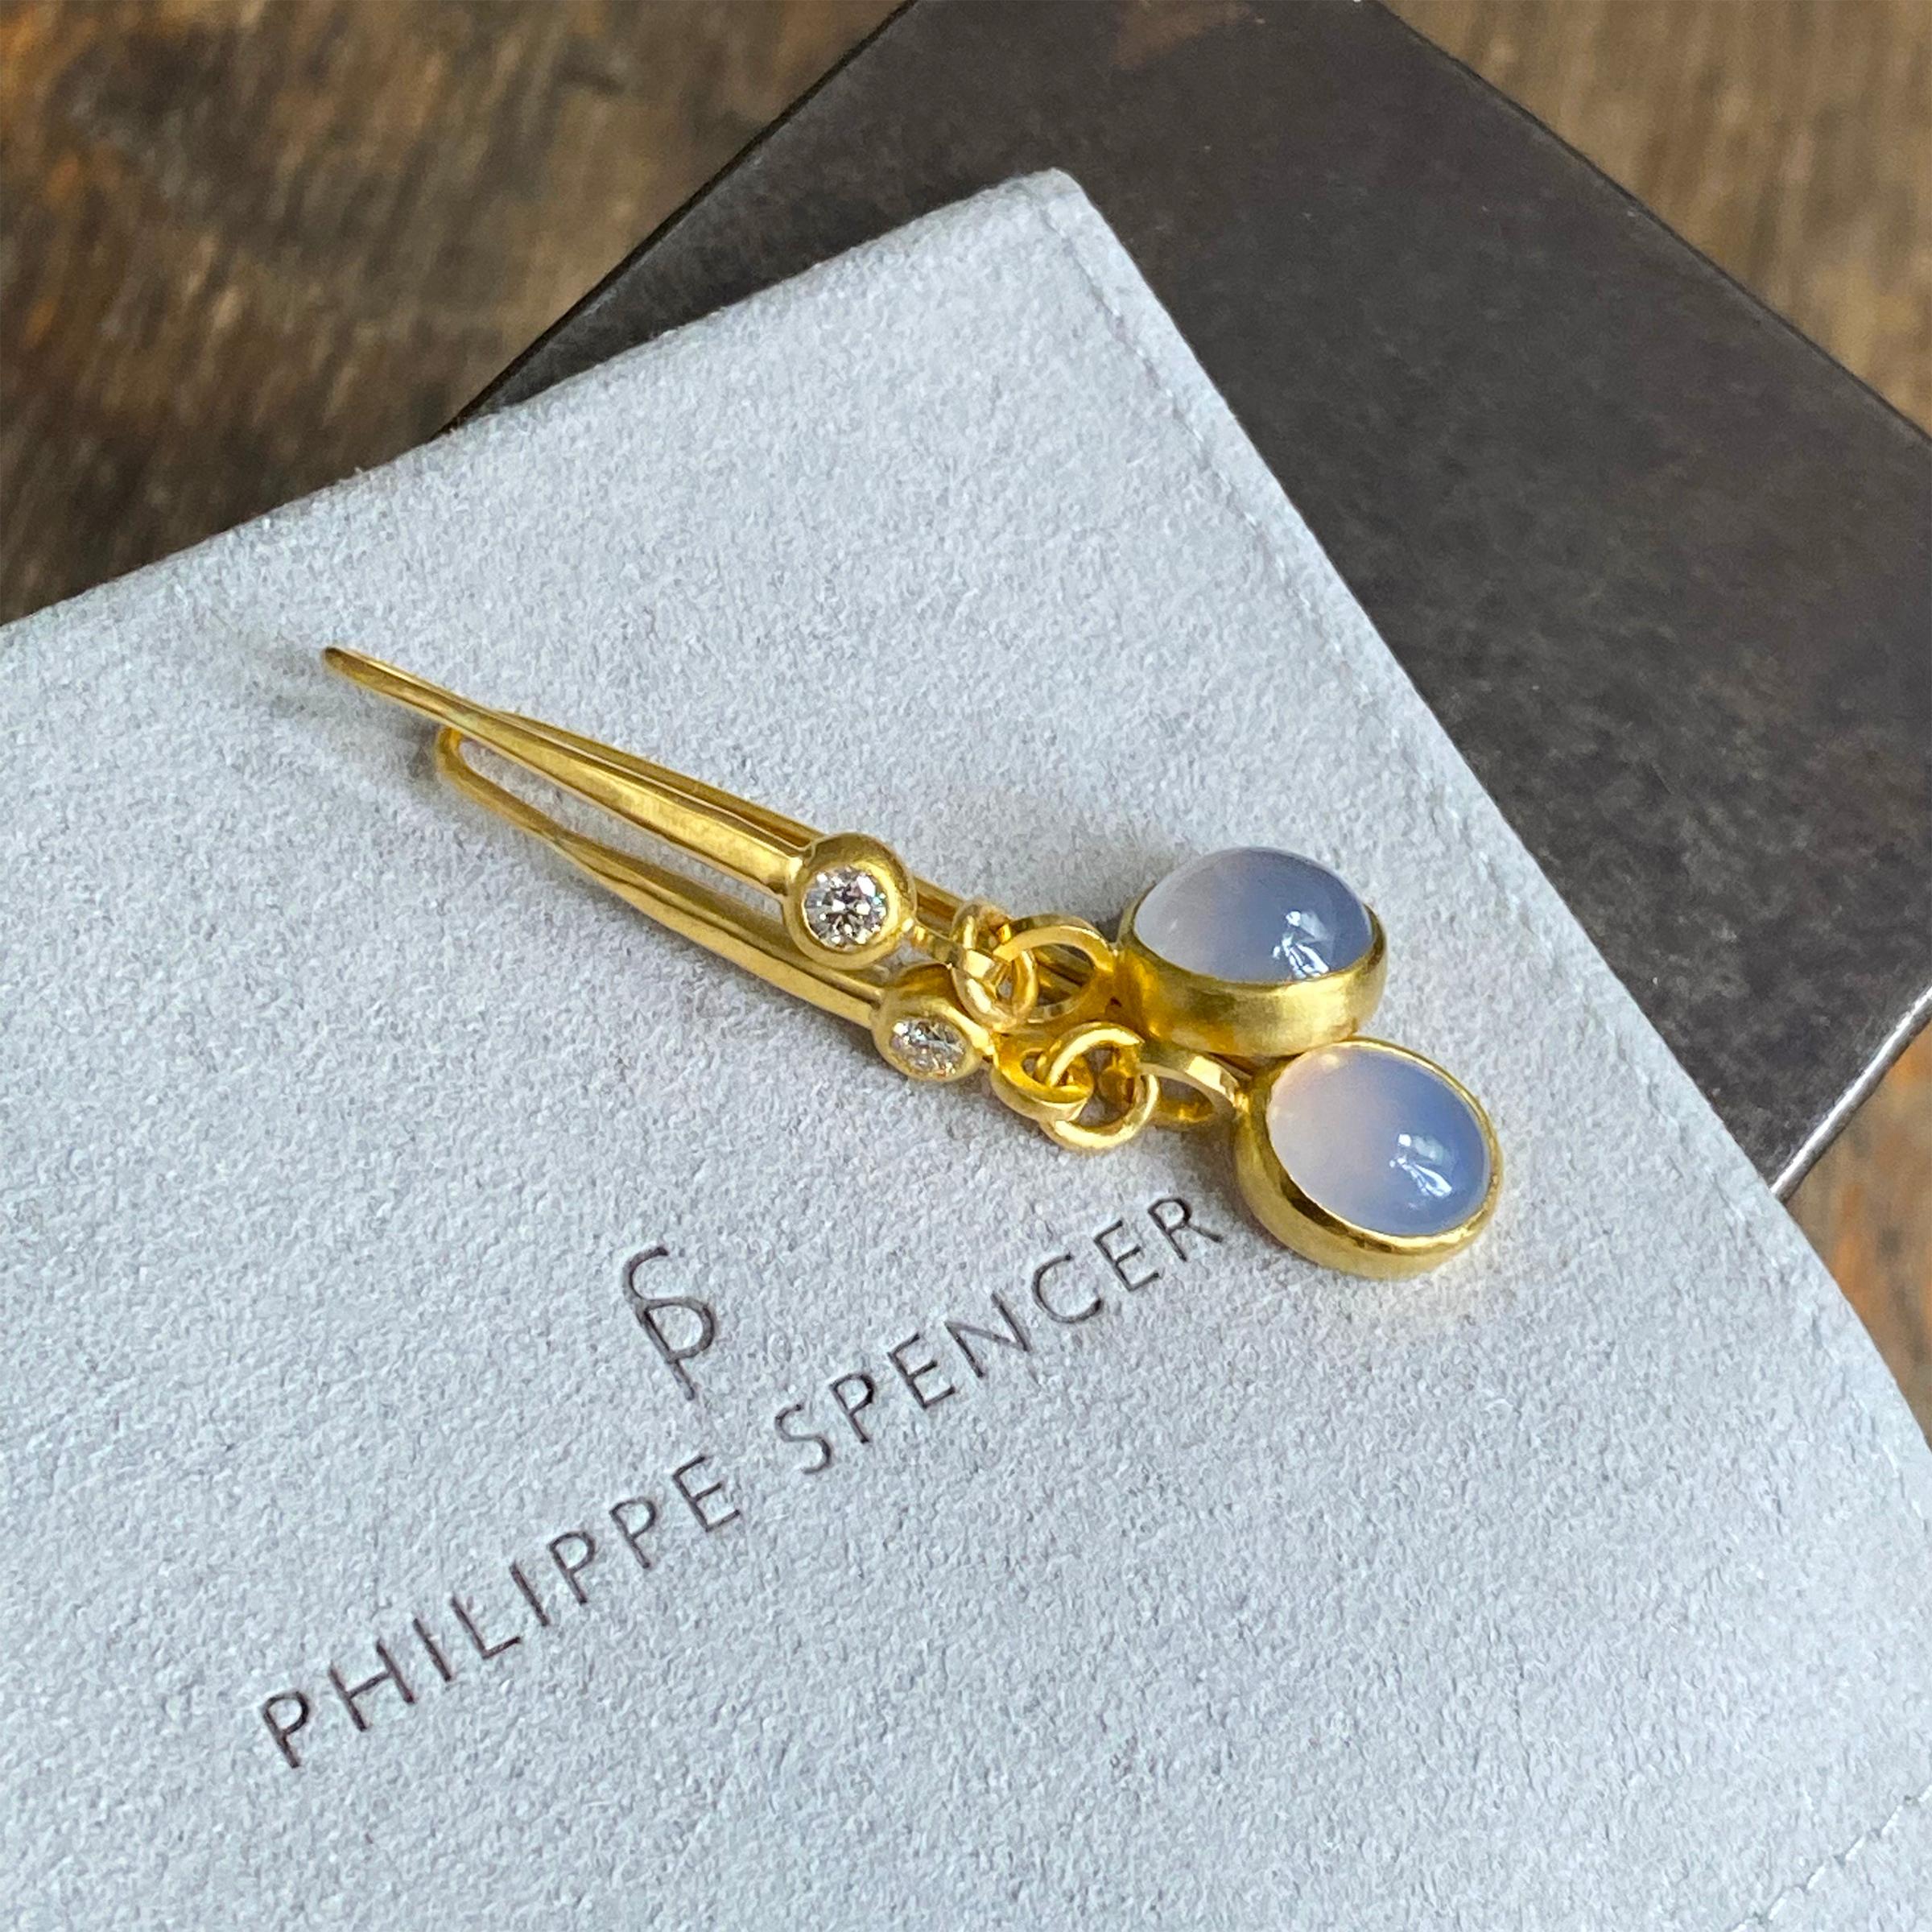 PHILIPPE SPENCER - .40 Ct. Diamants sans couleur (D-F) et 8,5 ct. Les cabochons de calcédoine bleue sont enveloppés dans de l'or pur 22 carats avec des anneaux en or massif 20 carats et des boucles d'oreilles.

Ces glorieuses boucles d'oreilles,